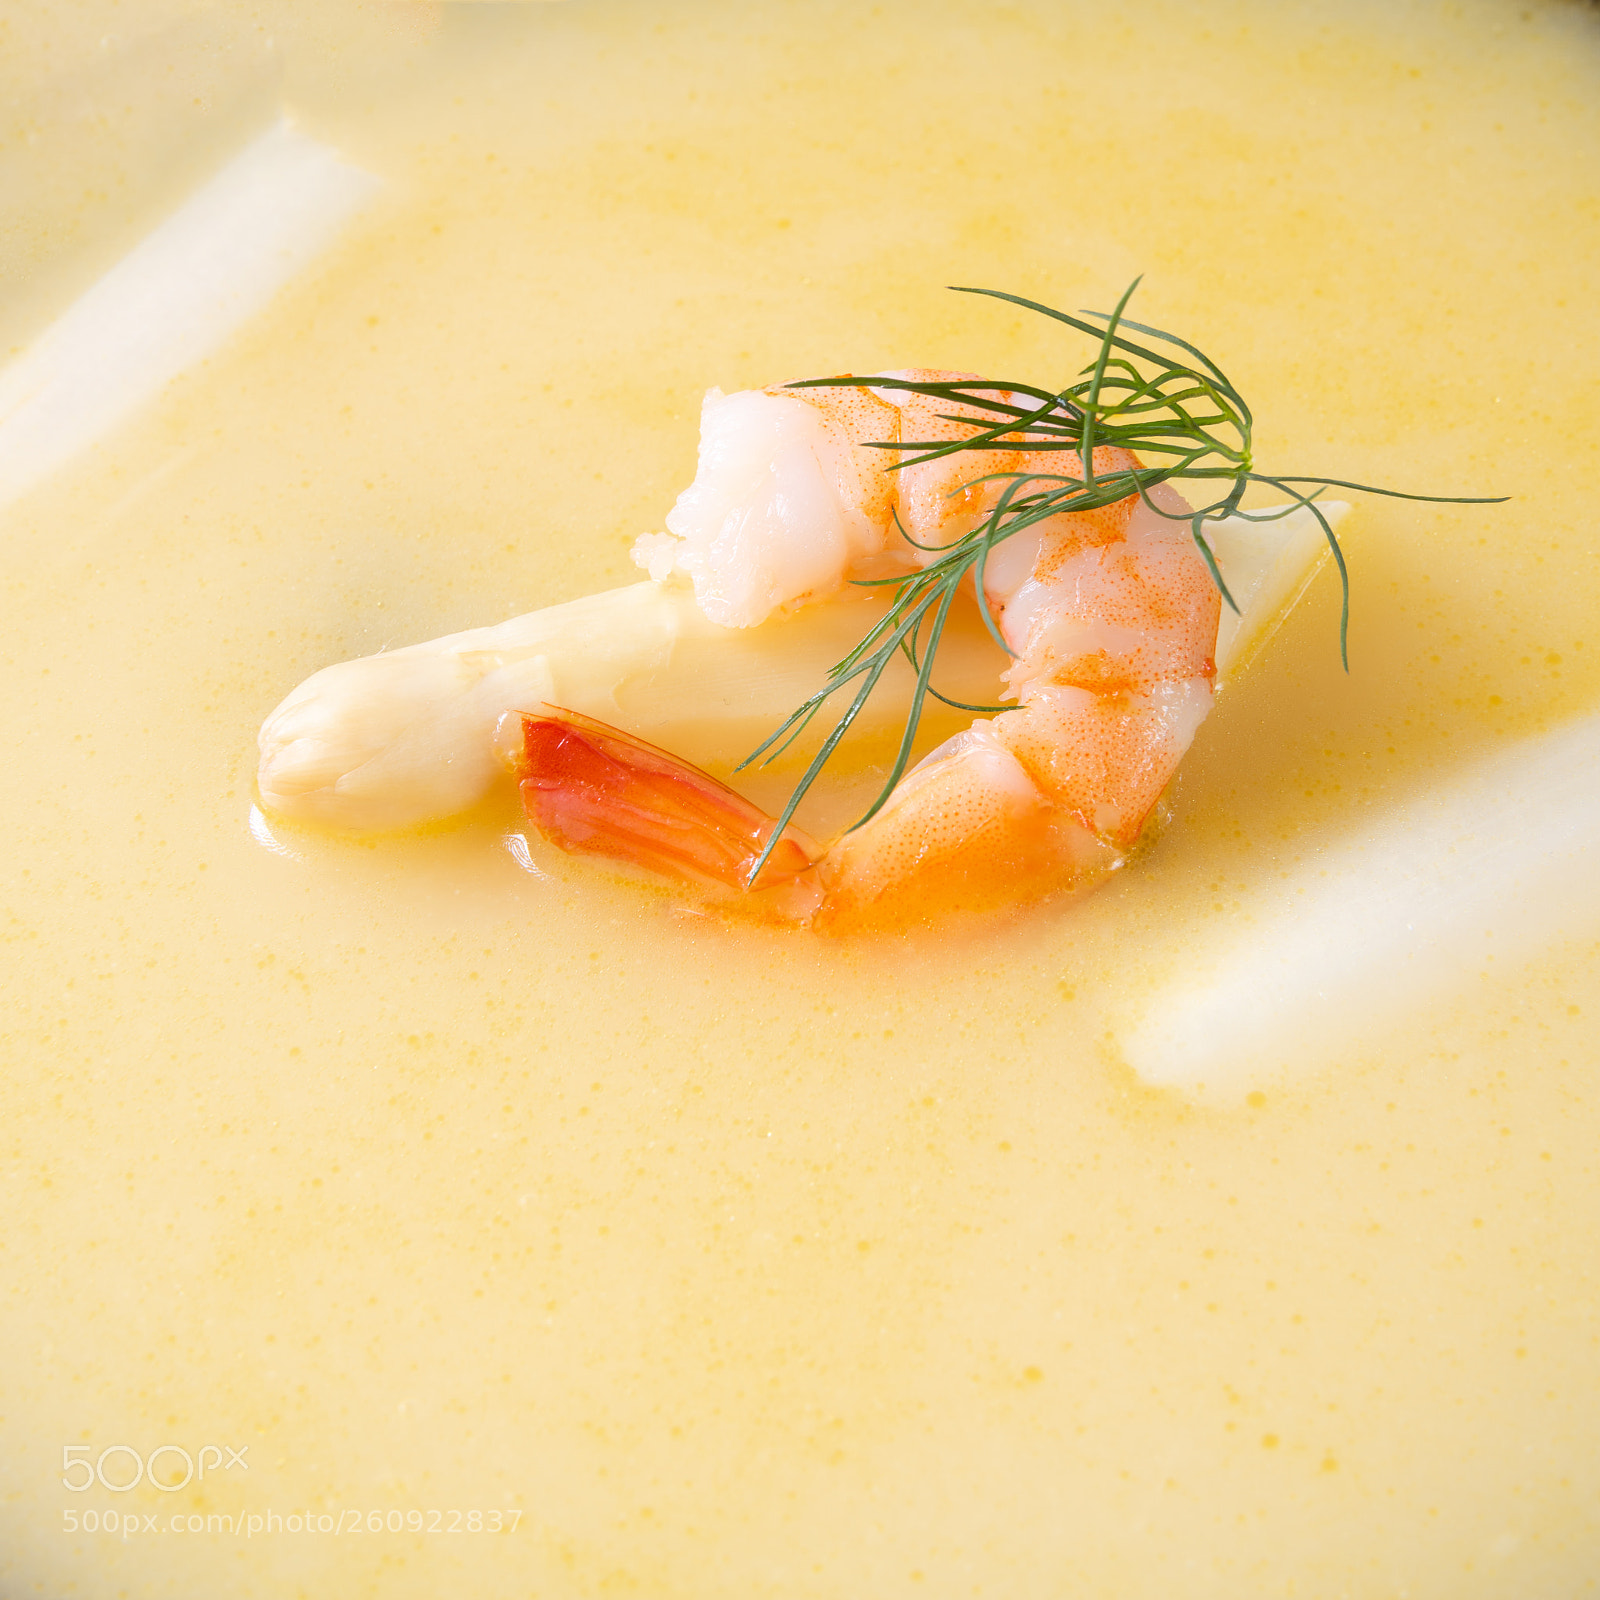 Nikon D810 sample photo. Delicious asparagus cream soup photography